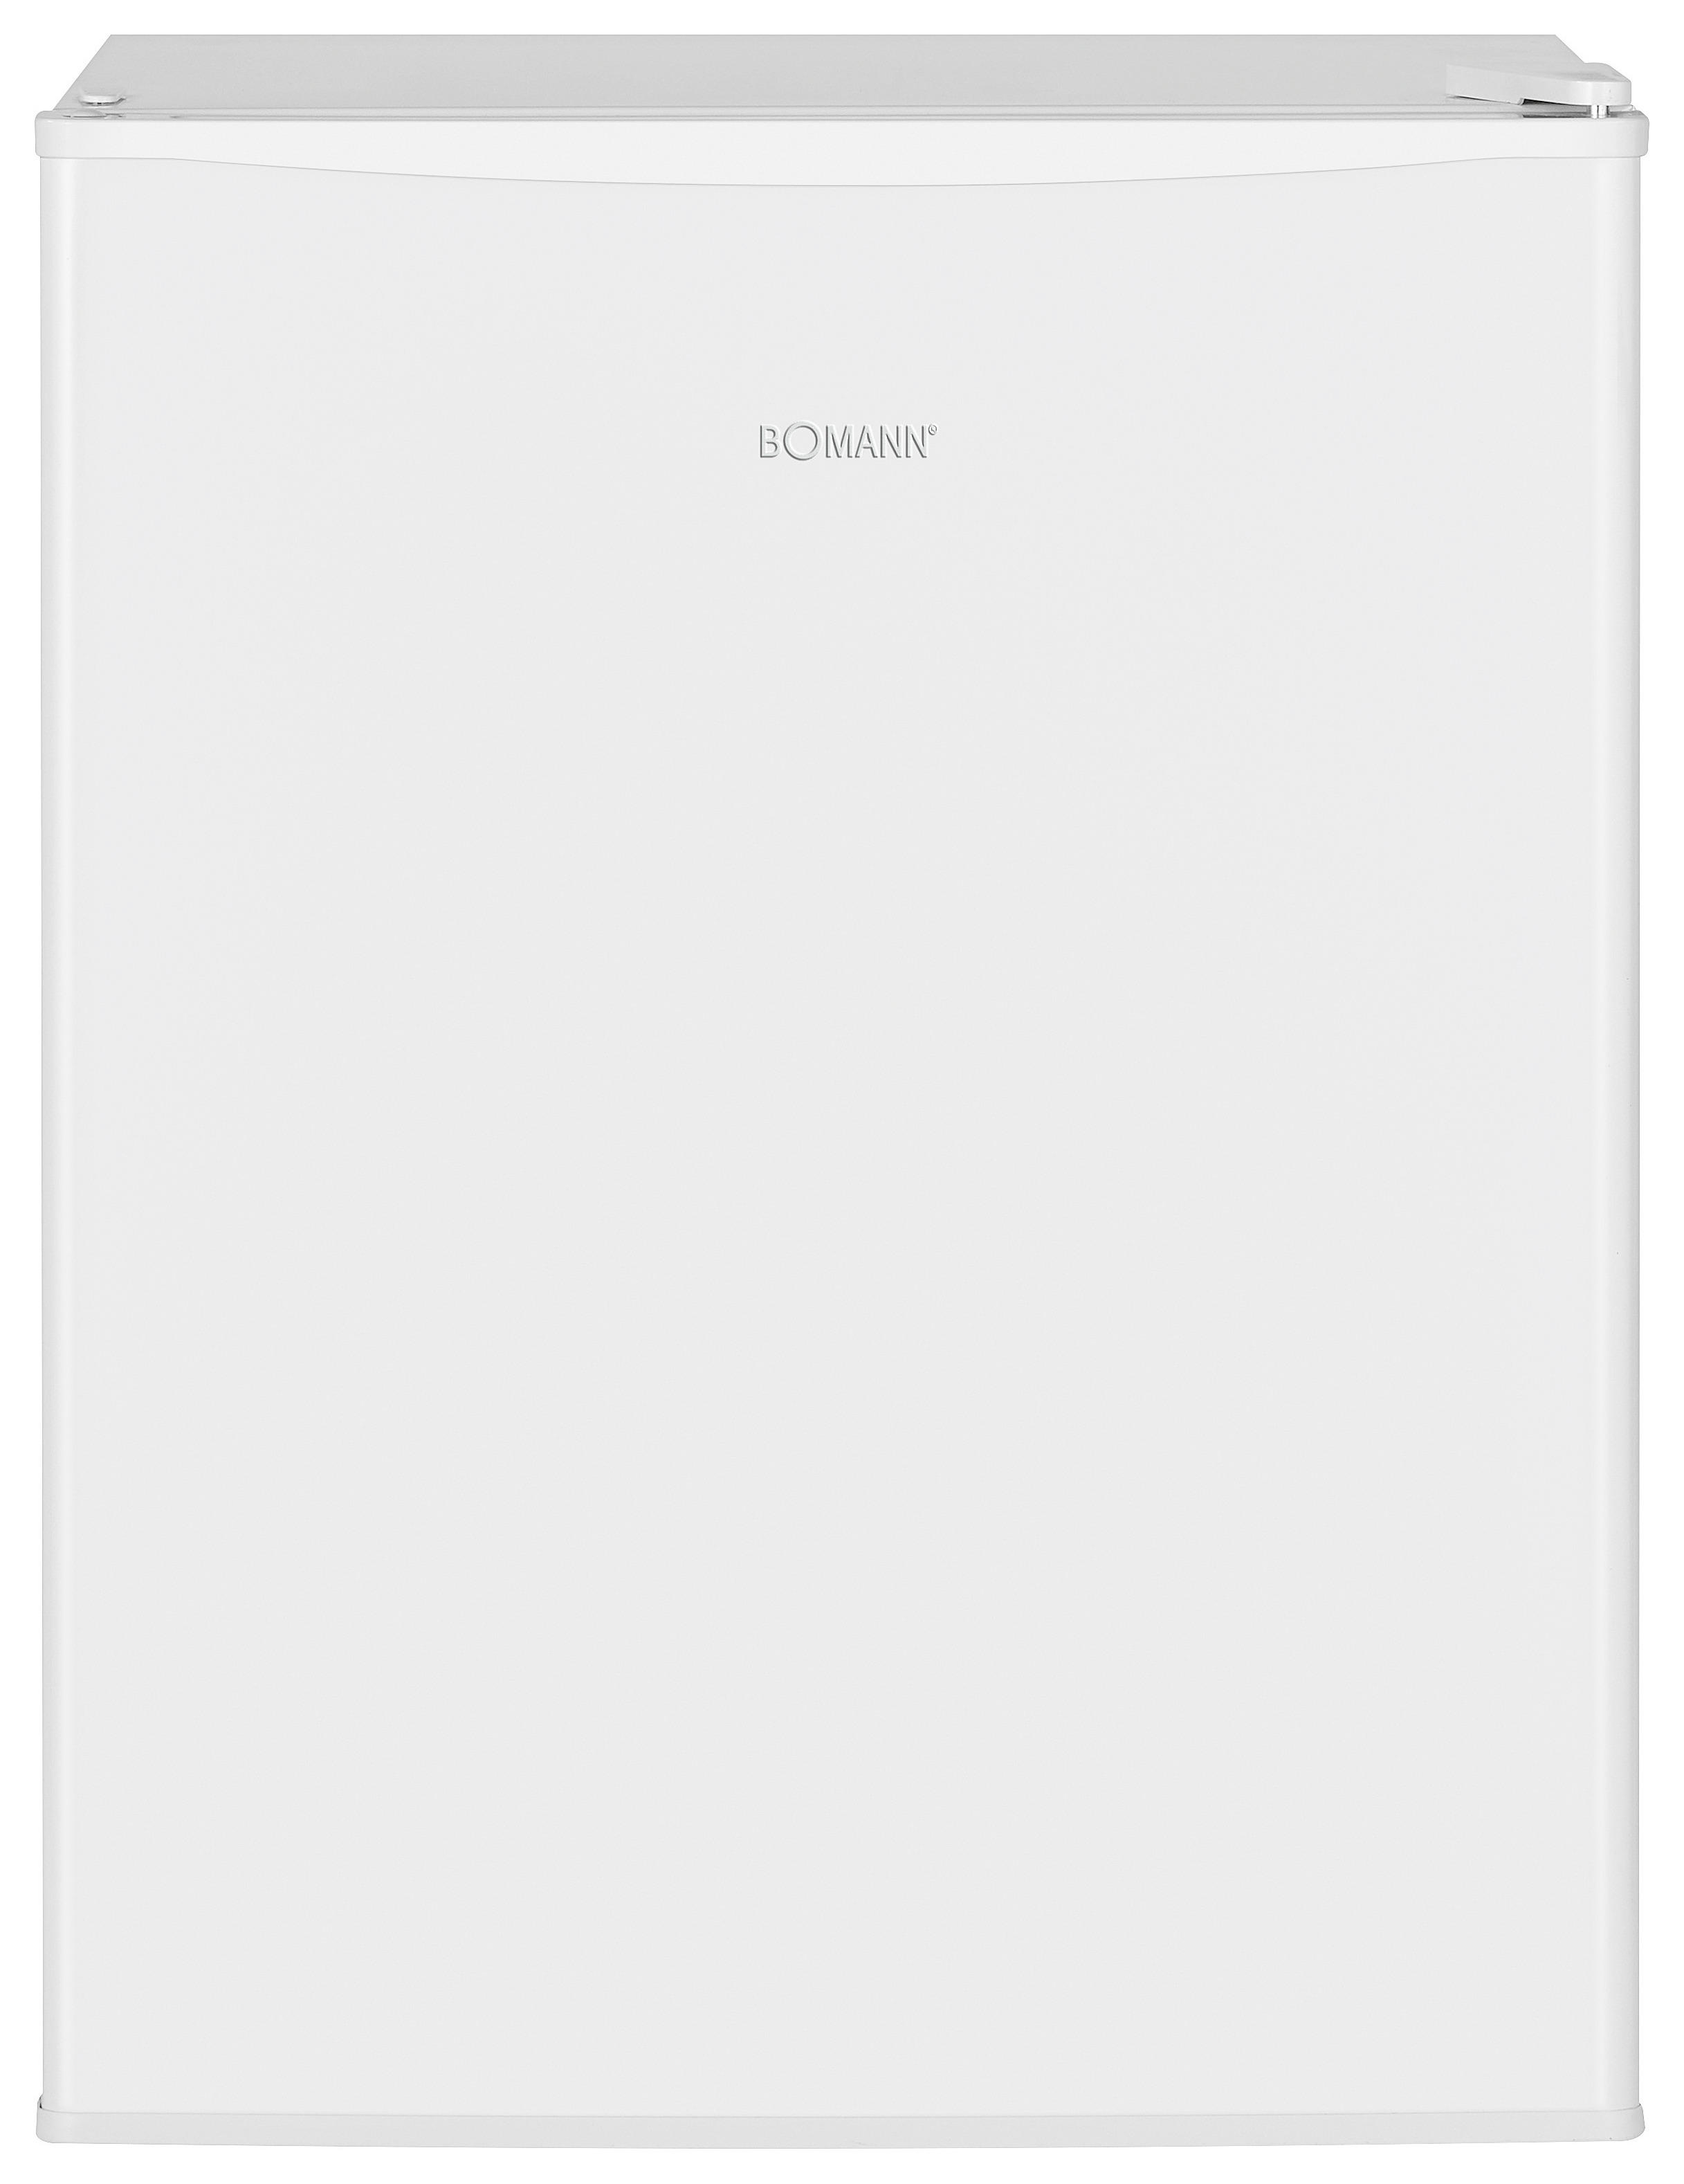 KÜHLBOX Weiß  - Weiß, Basics (47/63,2/45cm) - Bomann